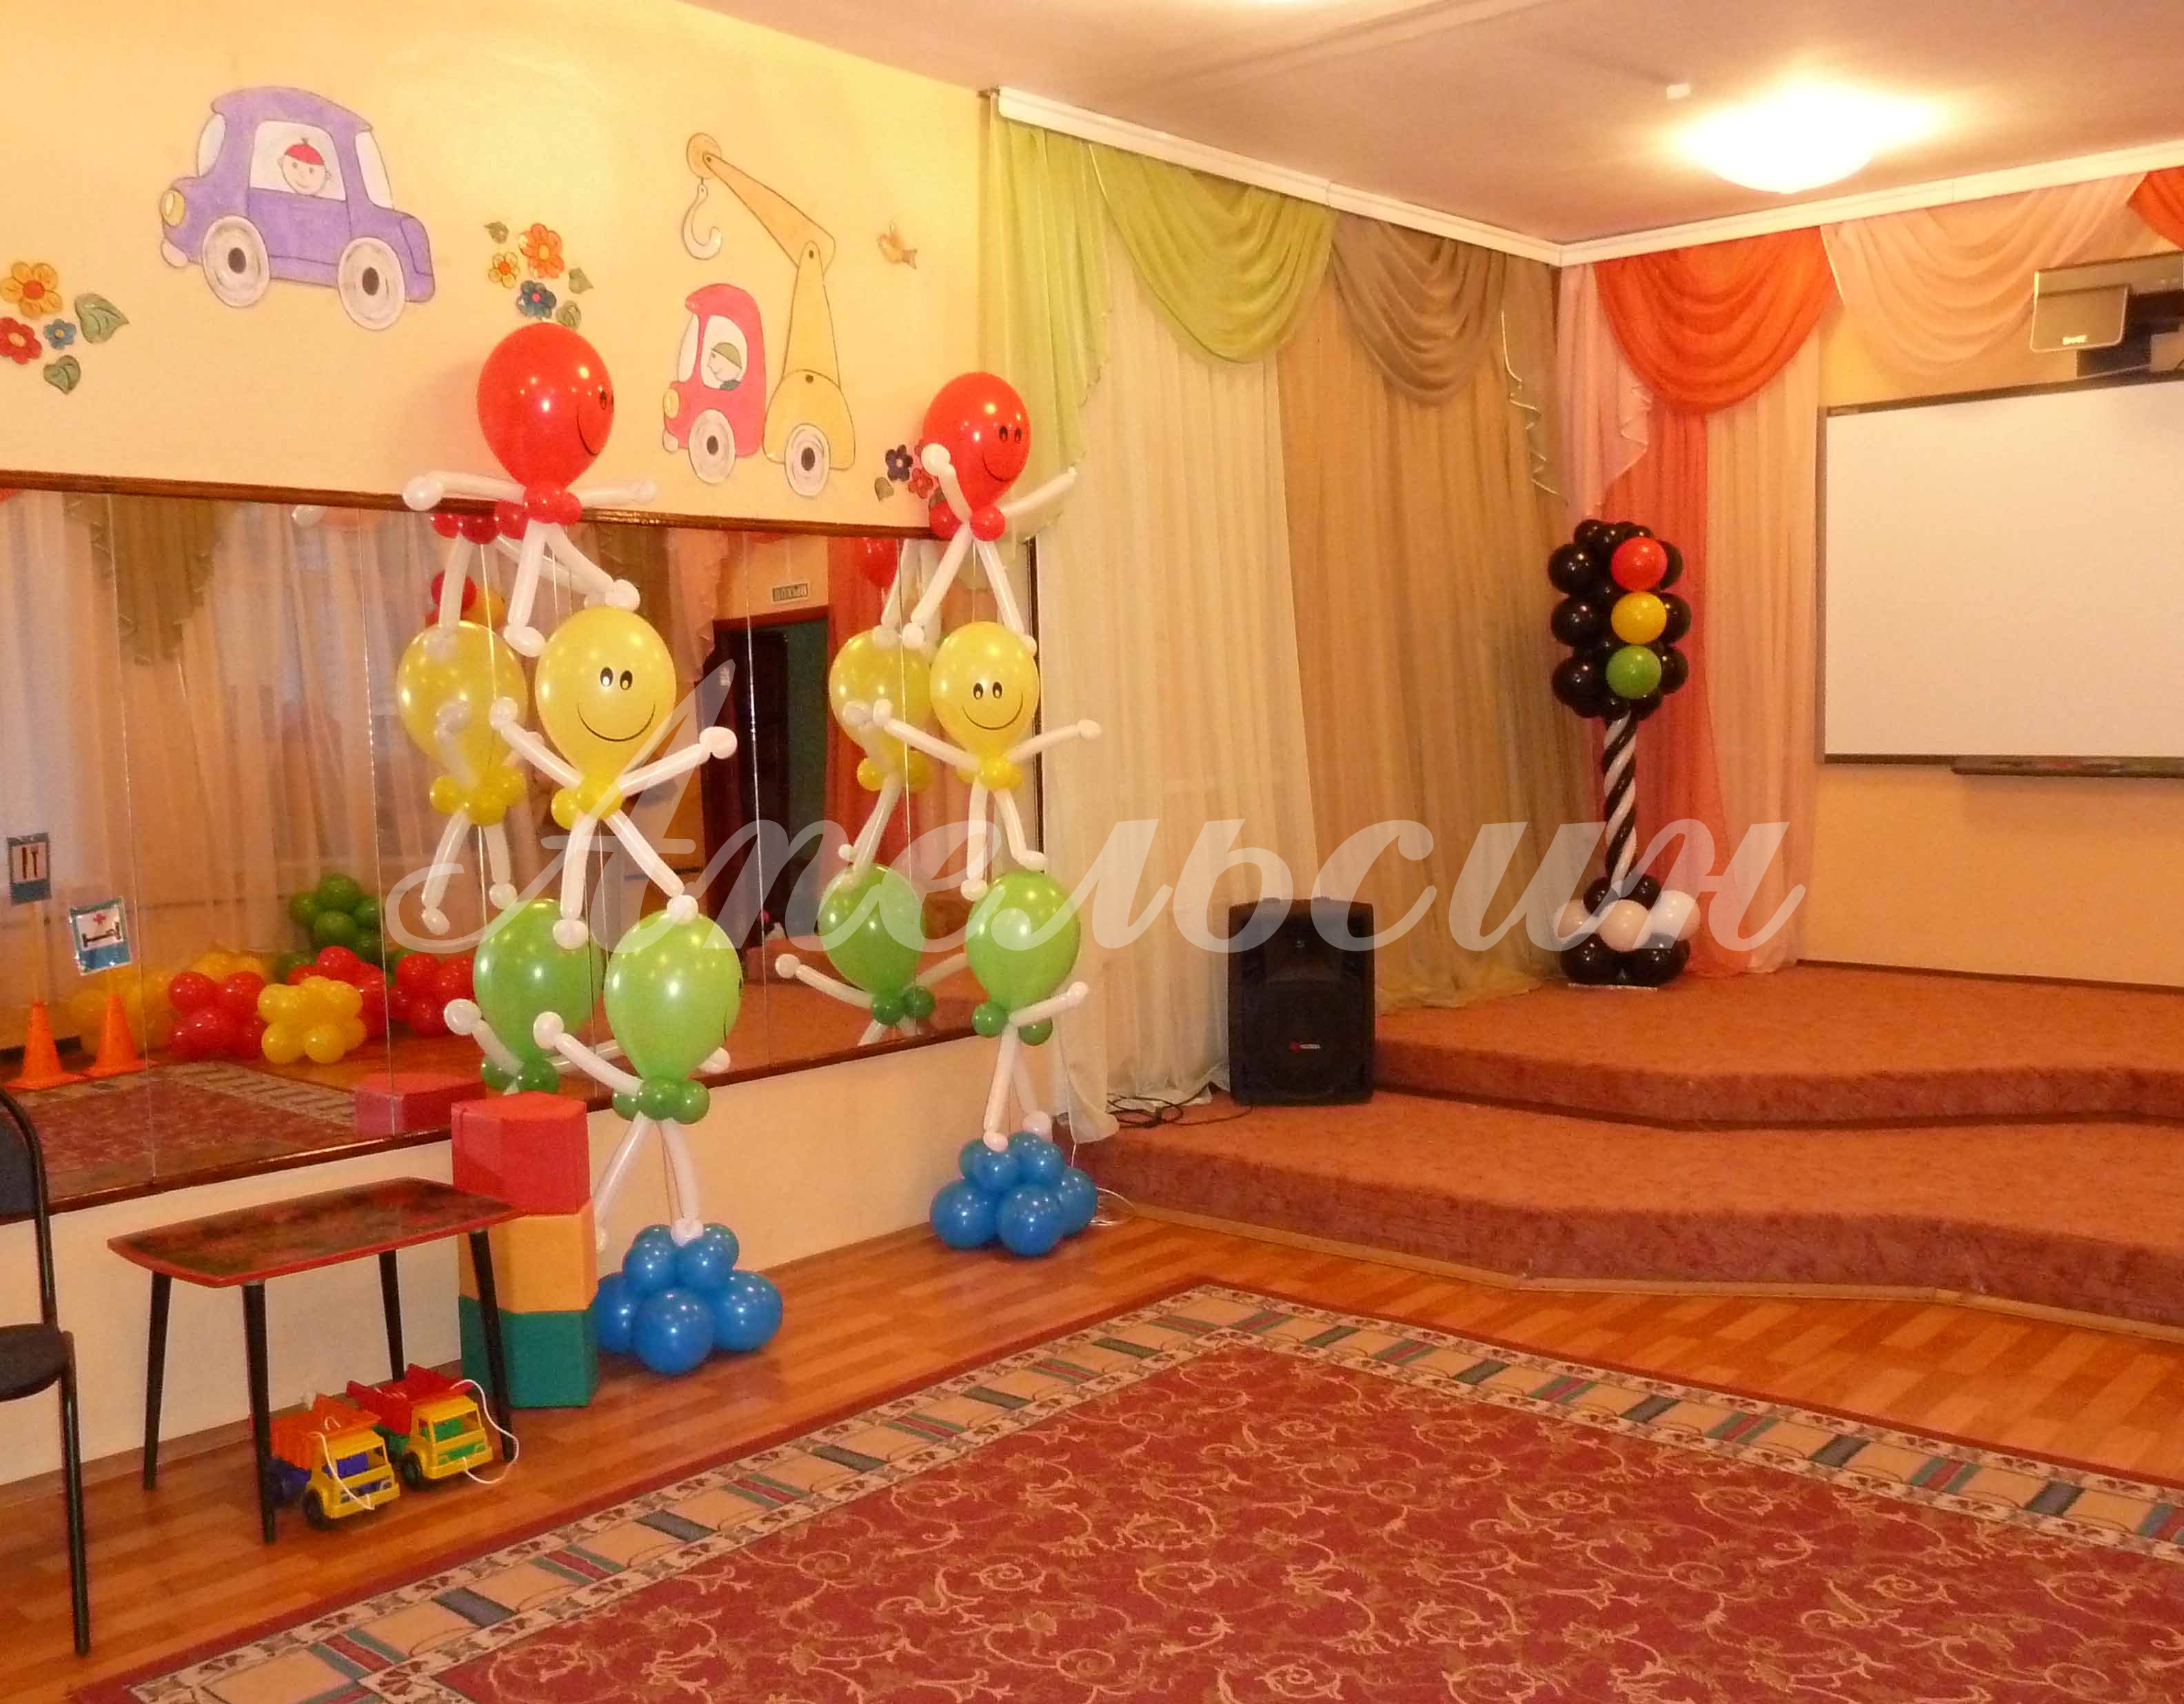 Оформление комнаты шарами на день рождения (70 фото)